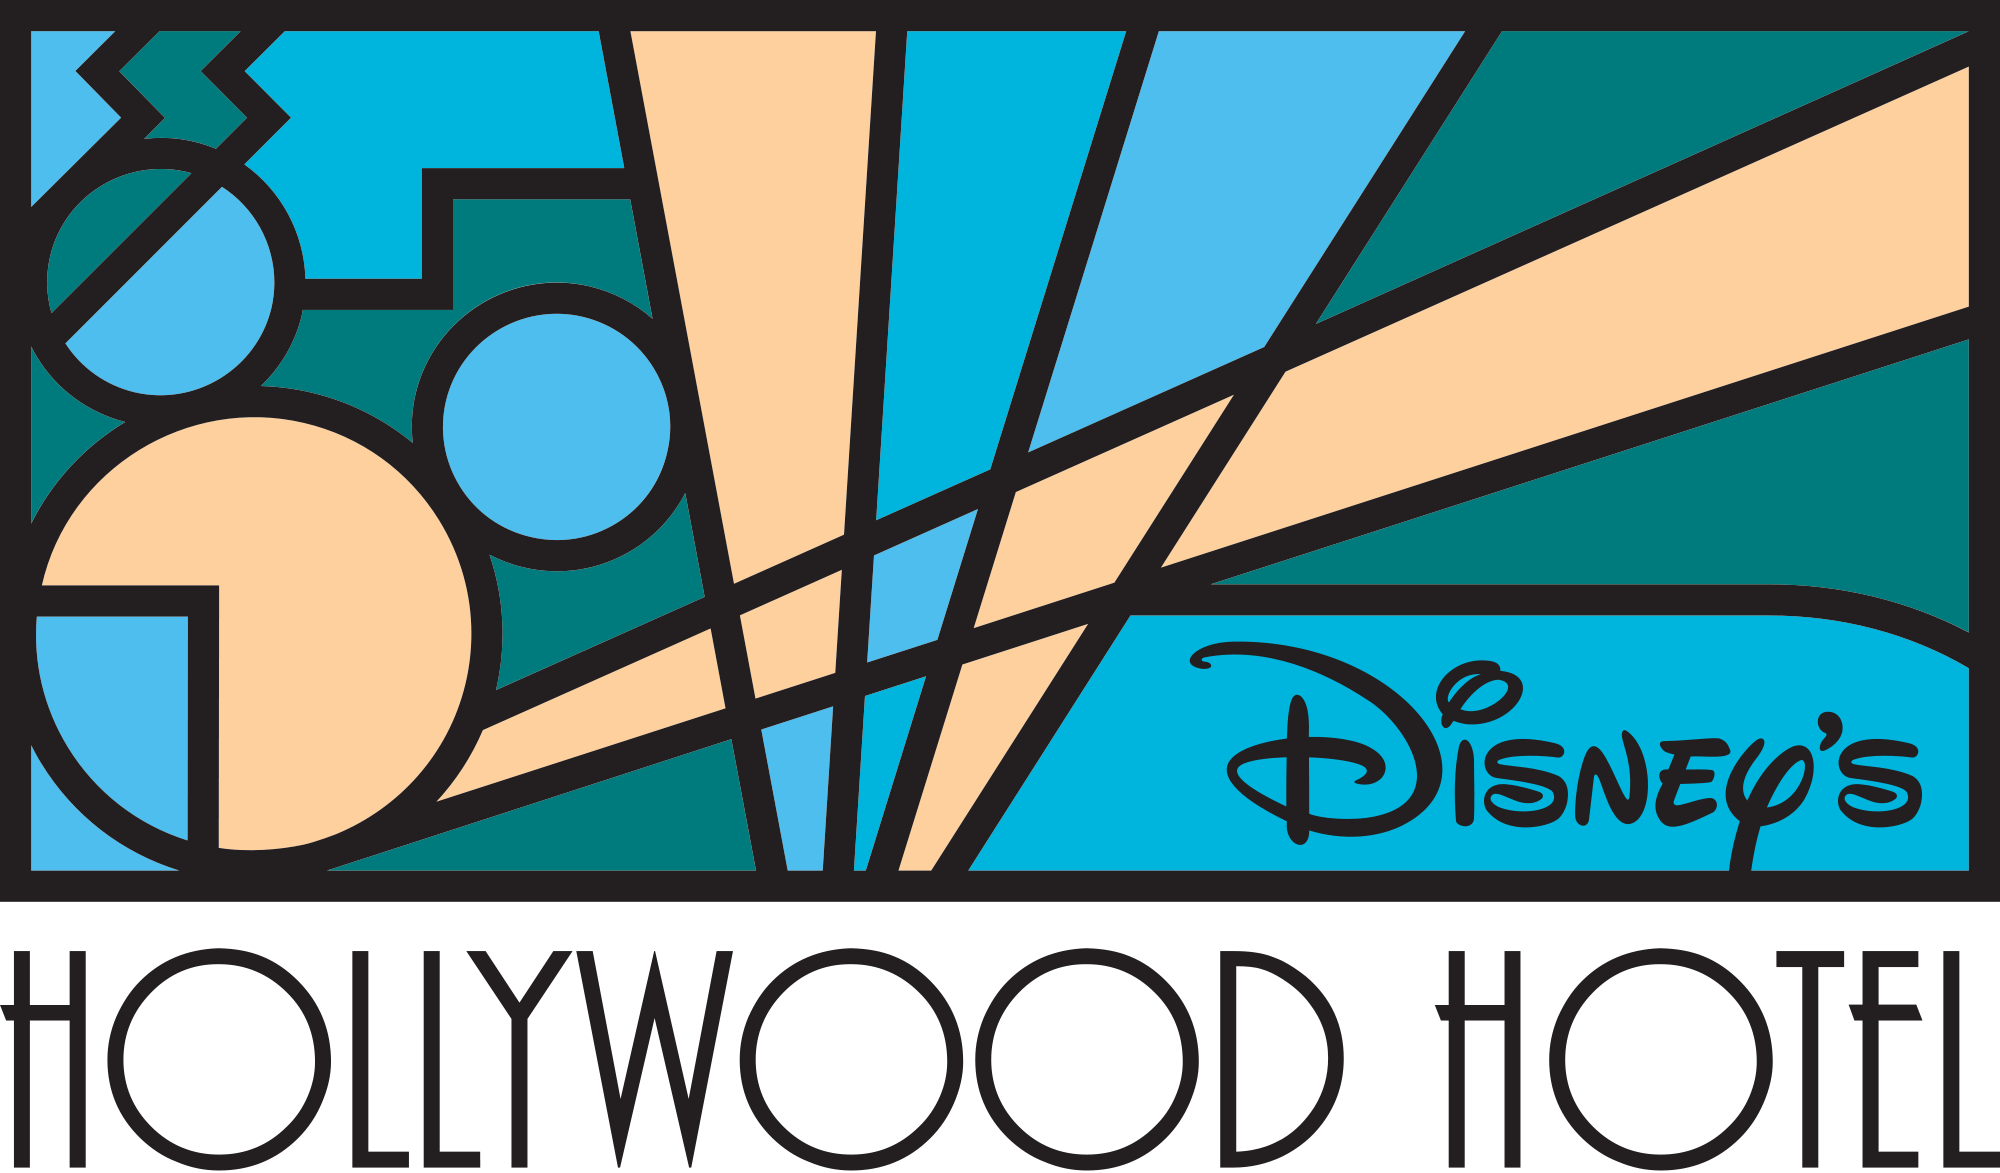 Disney's Hollywood Hotel - DisneyWiki